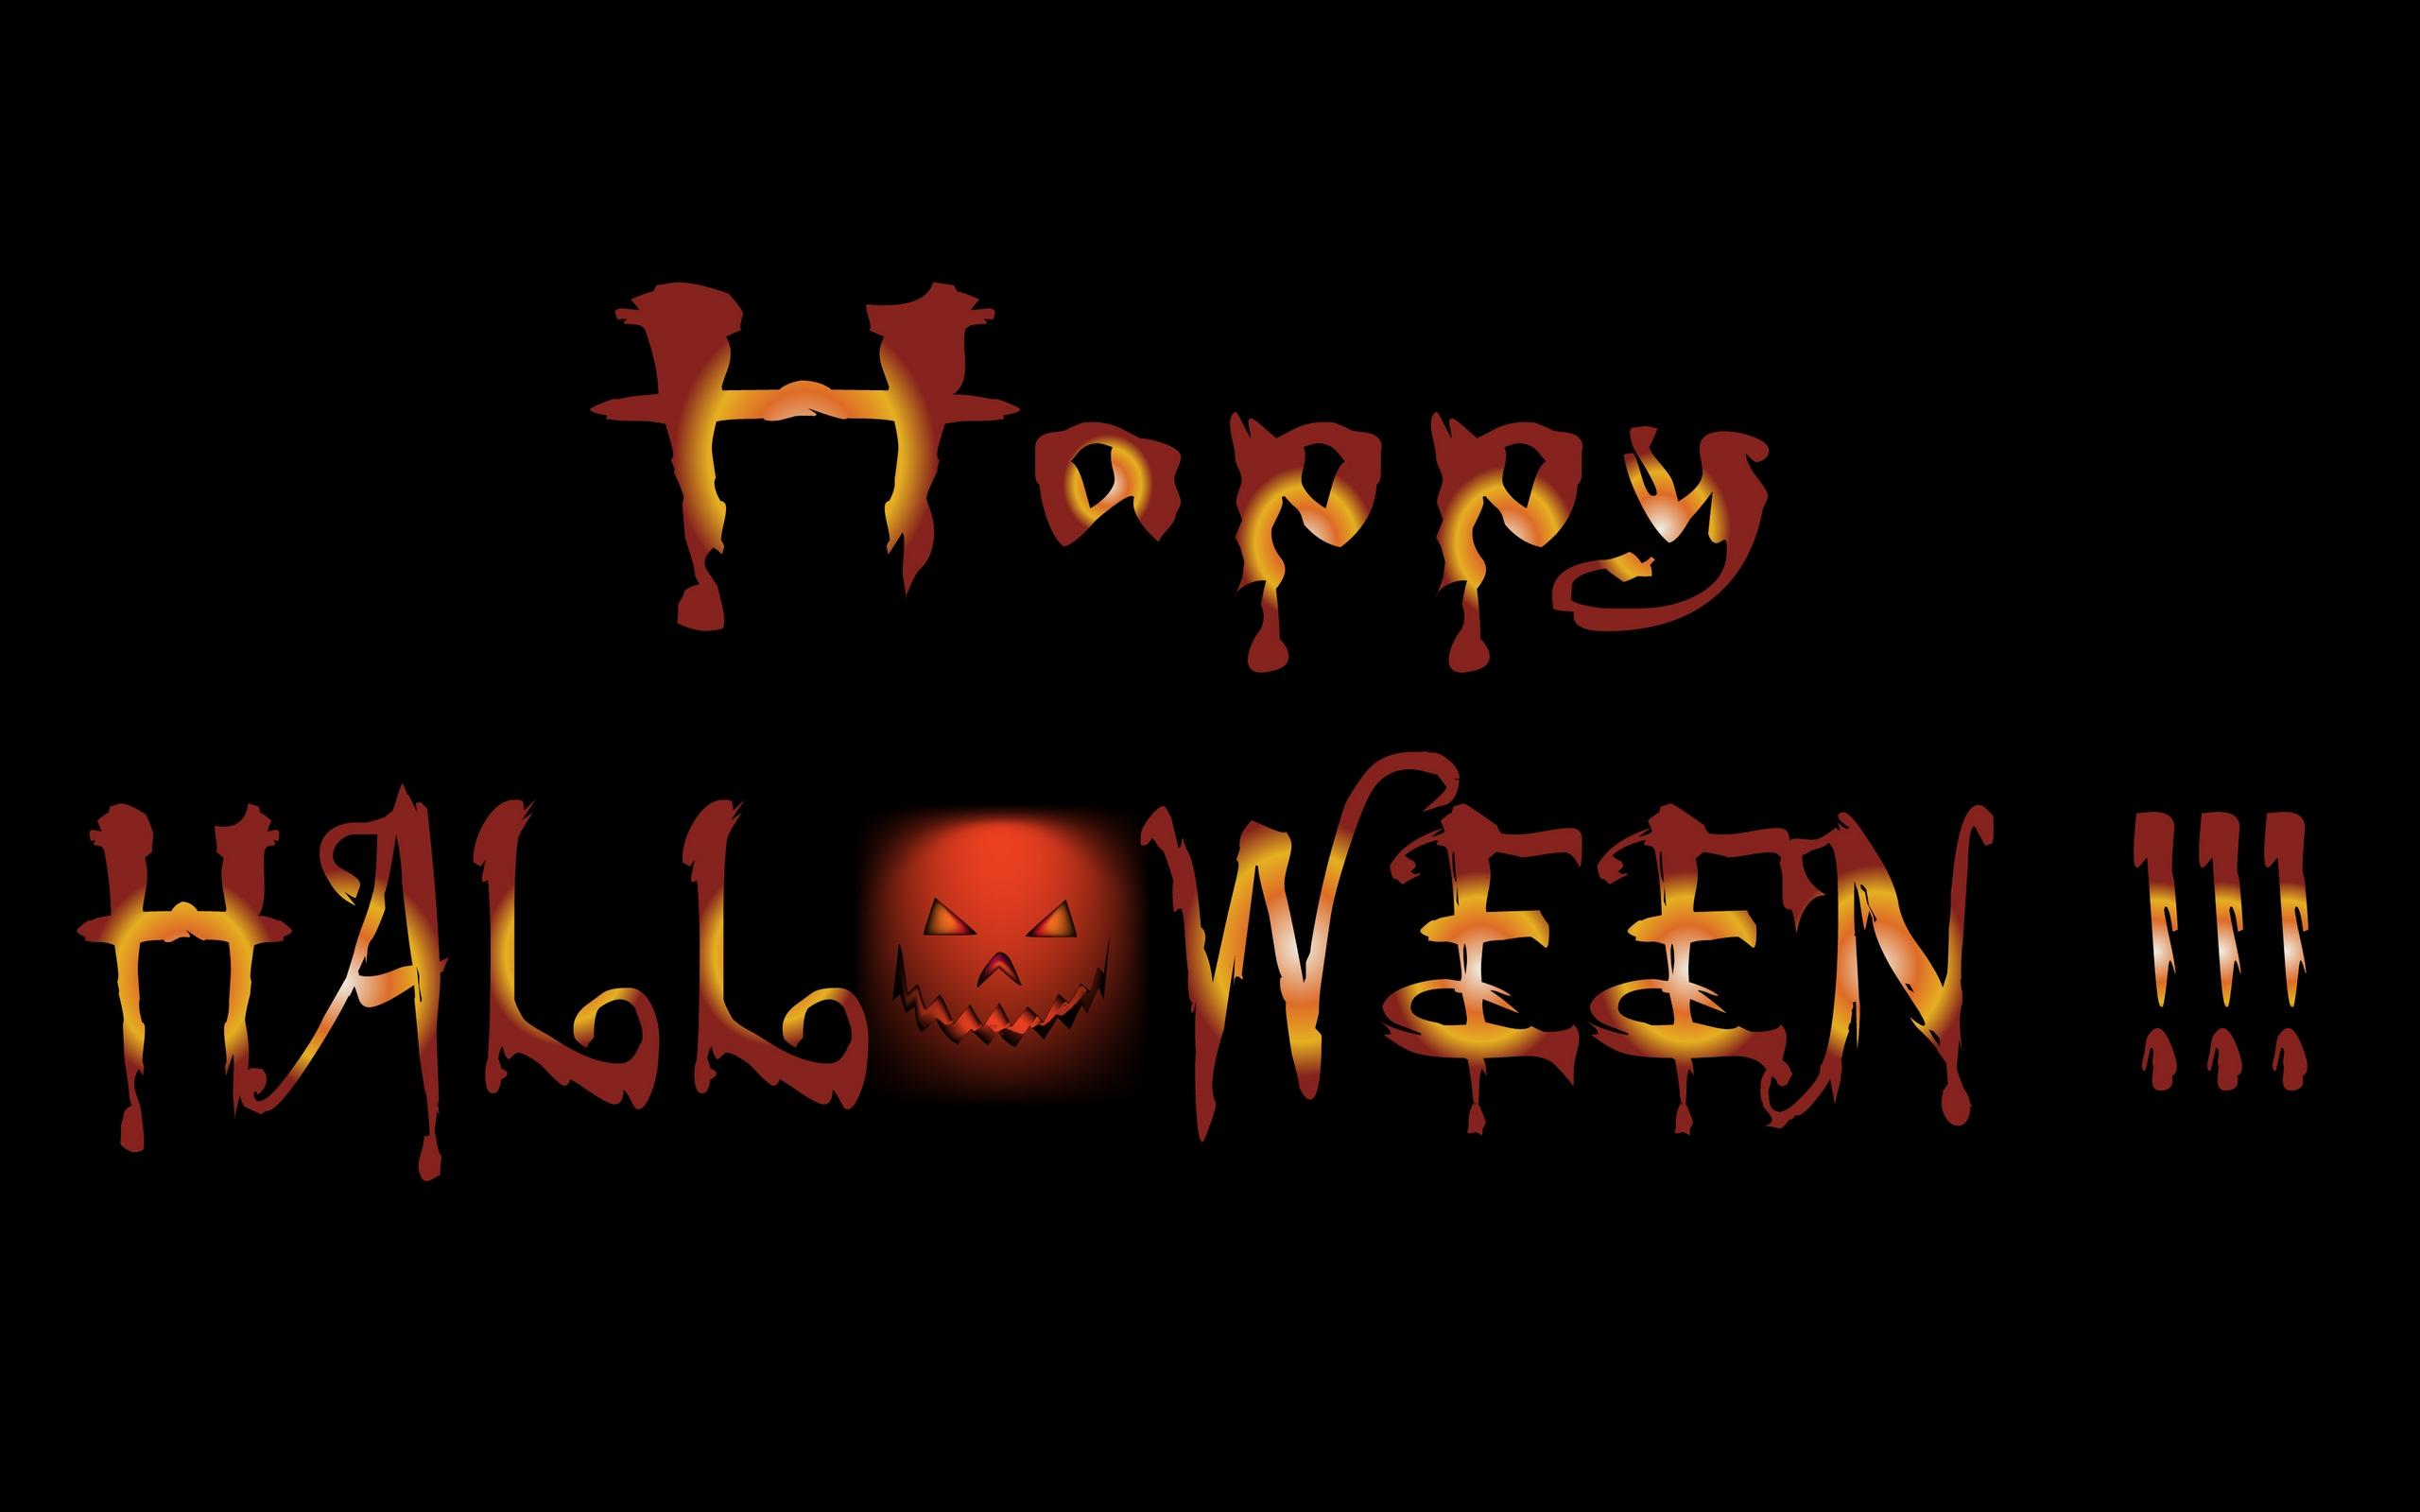 Happy Halloween HD Wallpaper